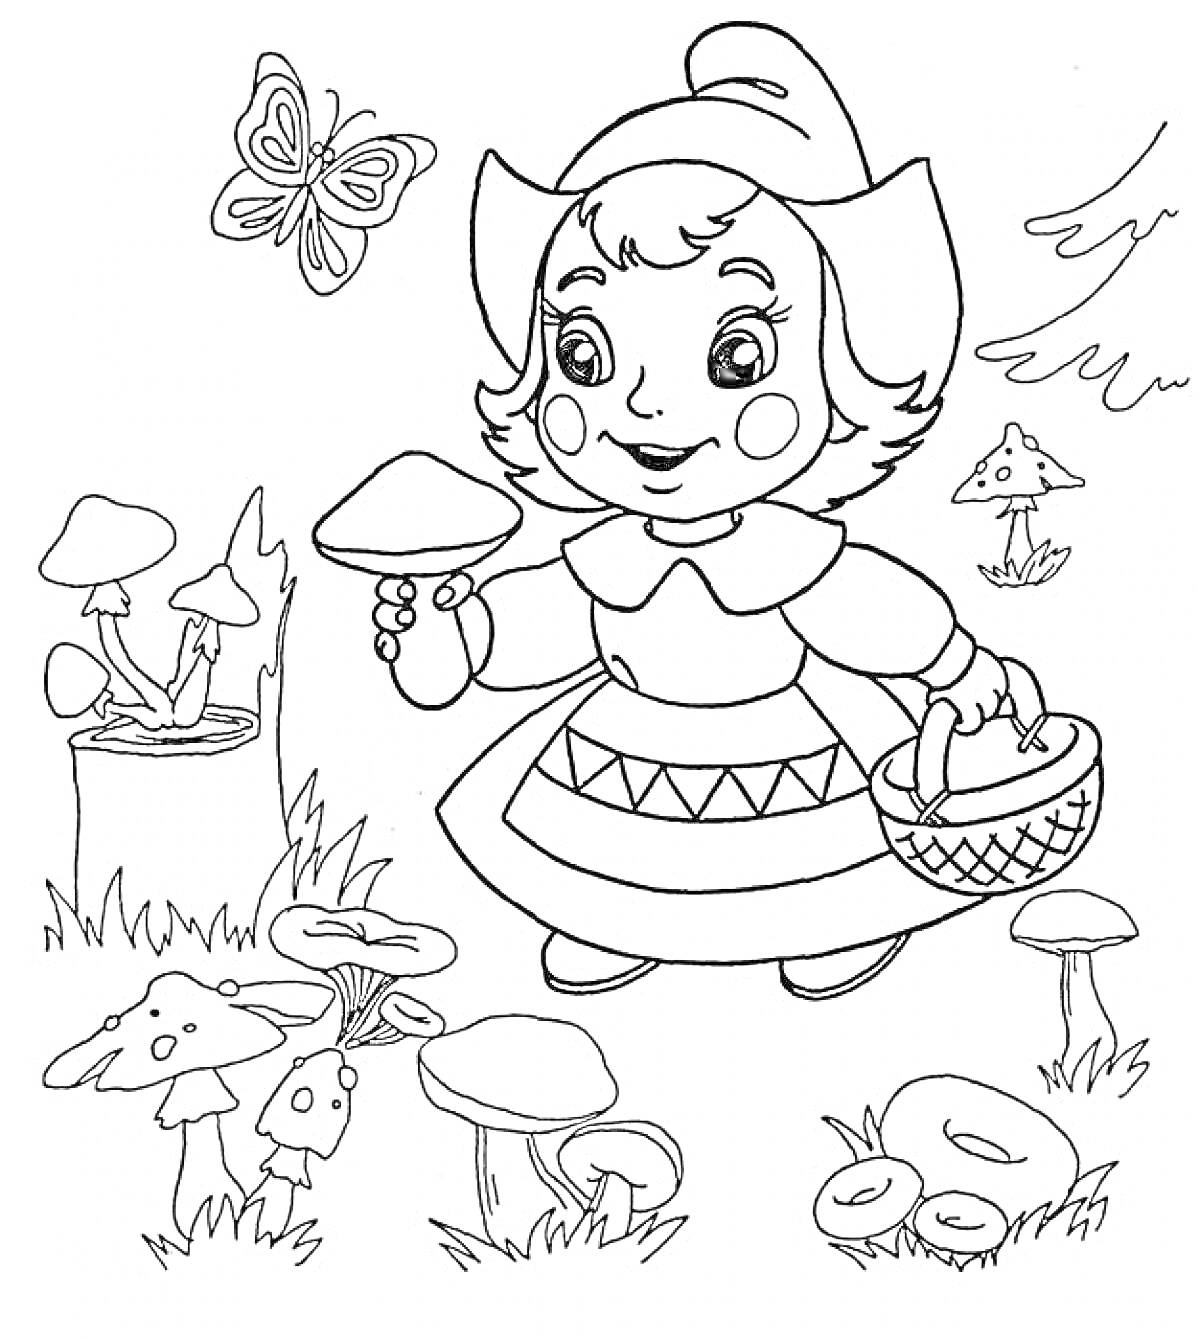 Девочка собирает грибы в лесу среди травы и бабочек